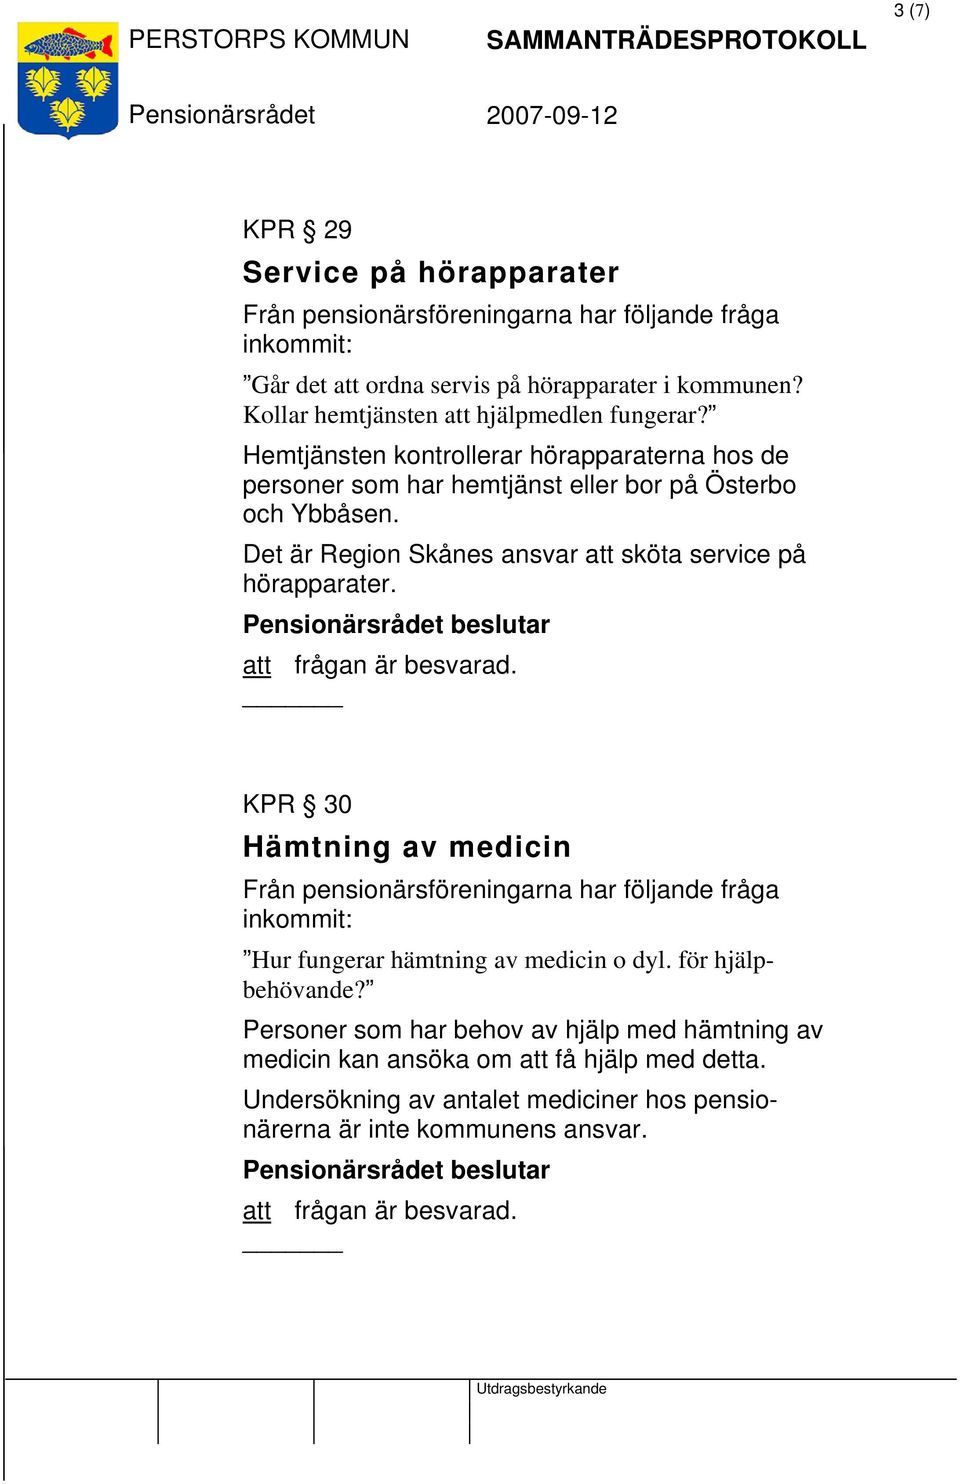 Det är Region Skånes ansvar att sköta service på hörapparater. att frågan är besvarad. KPR 30 Hämtning av medicin Hur fungerar hämtning av medicin o dyl.